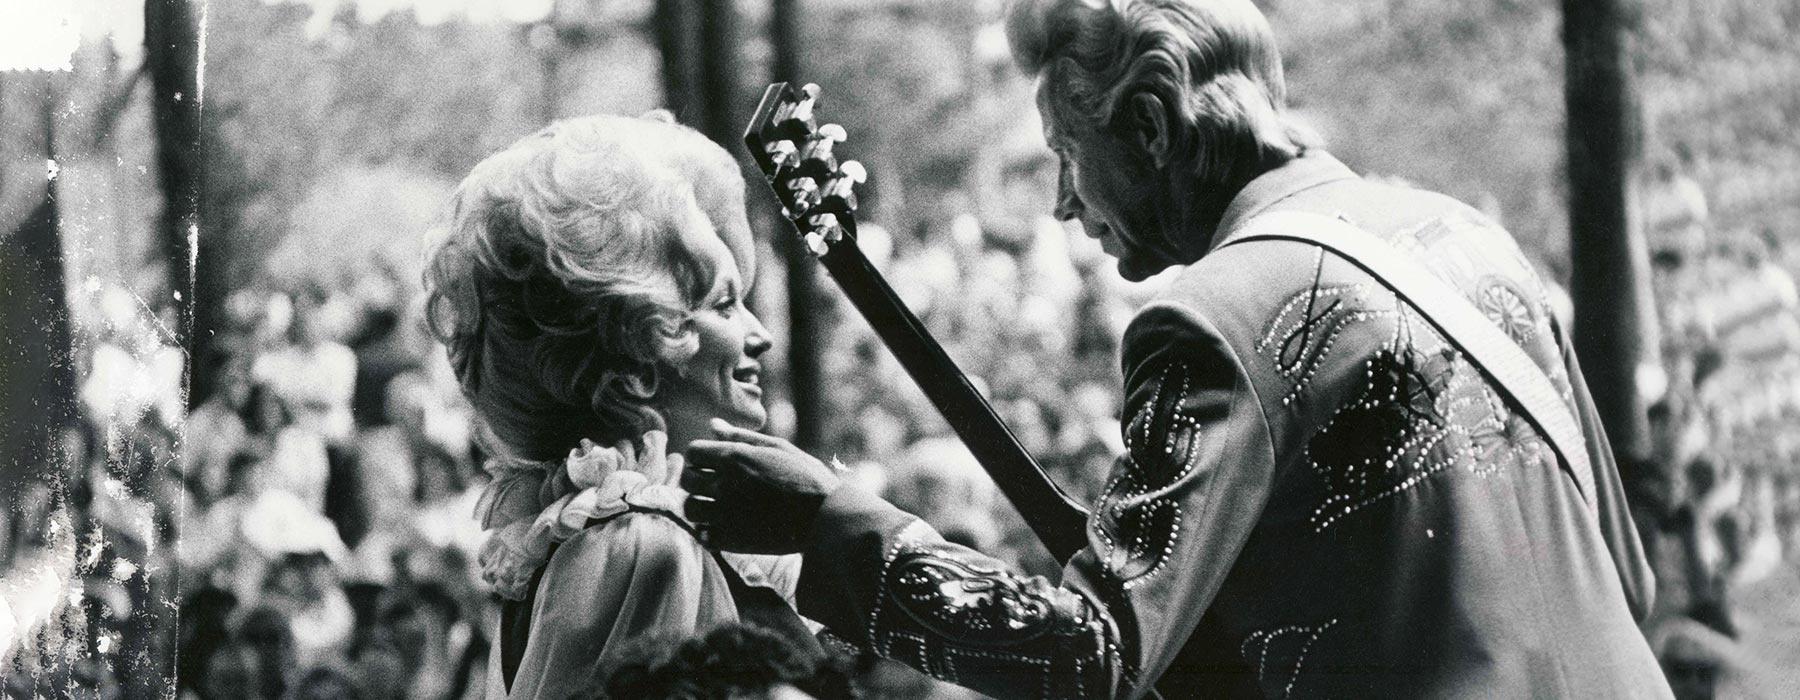 Dolly Parton & Porter Wagoner | Ken Burns Country Music on NPT